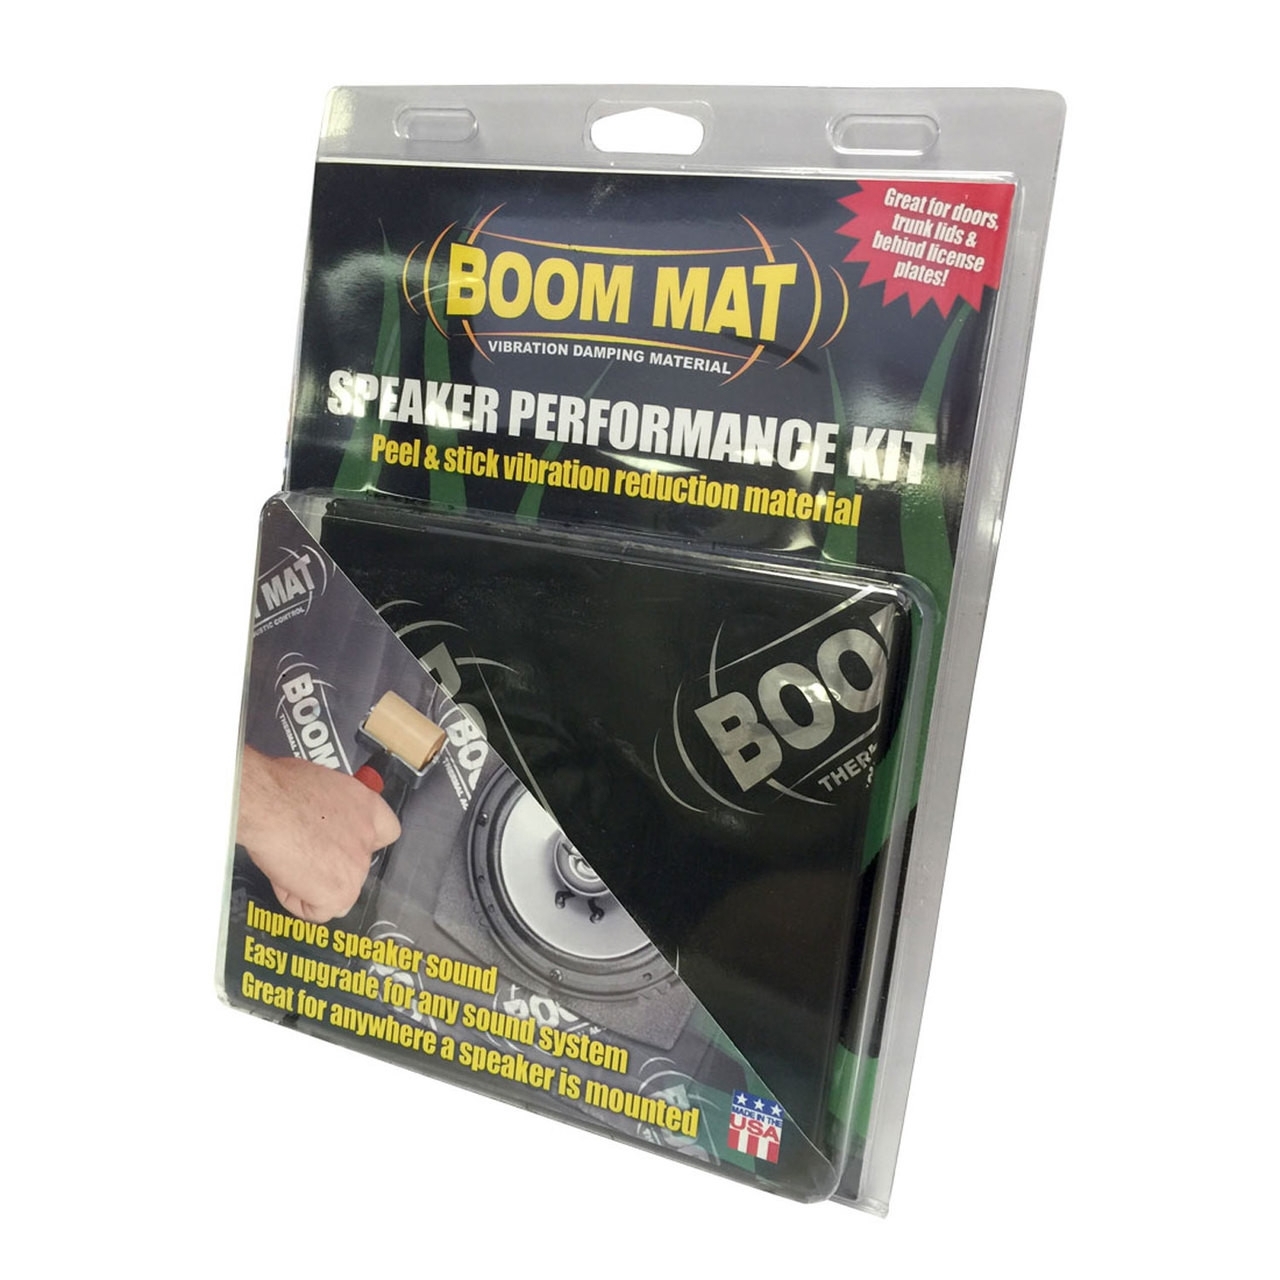 Boom Mat Vibration Damping Material & Speaker Performance Kit, DSMC-50199